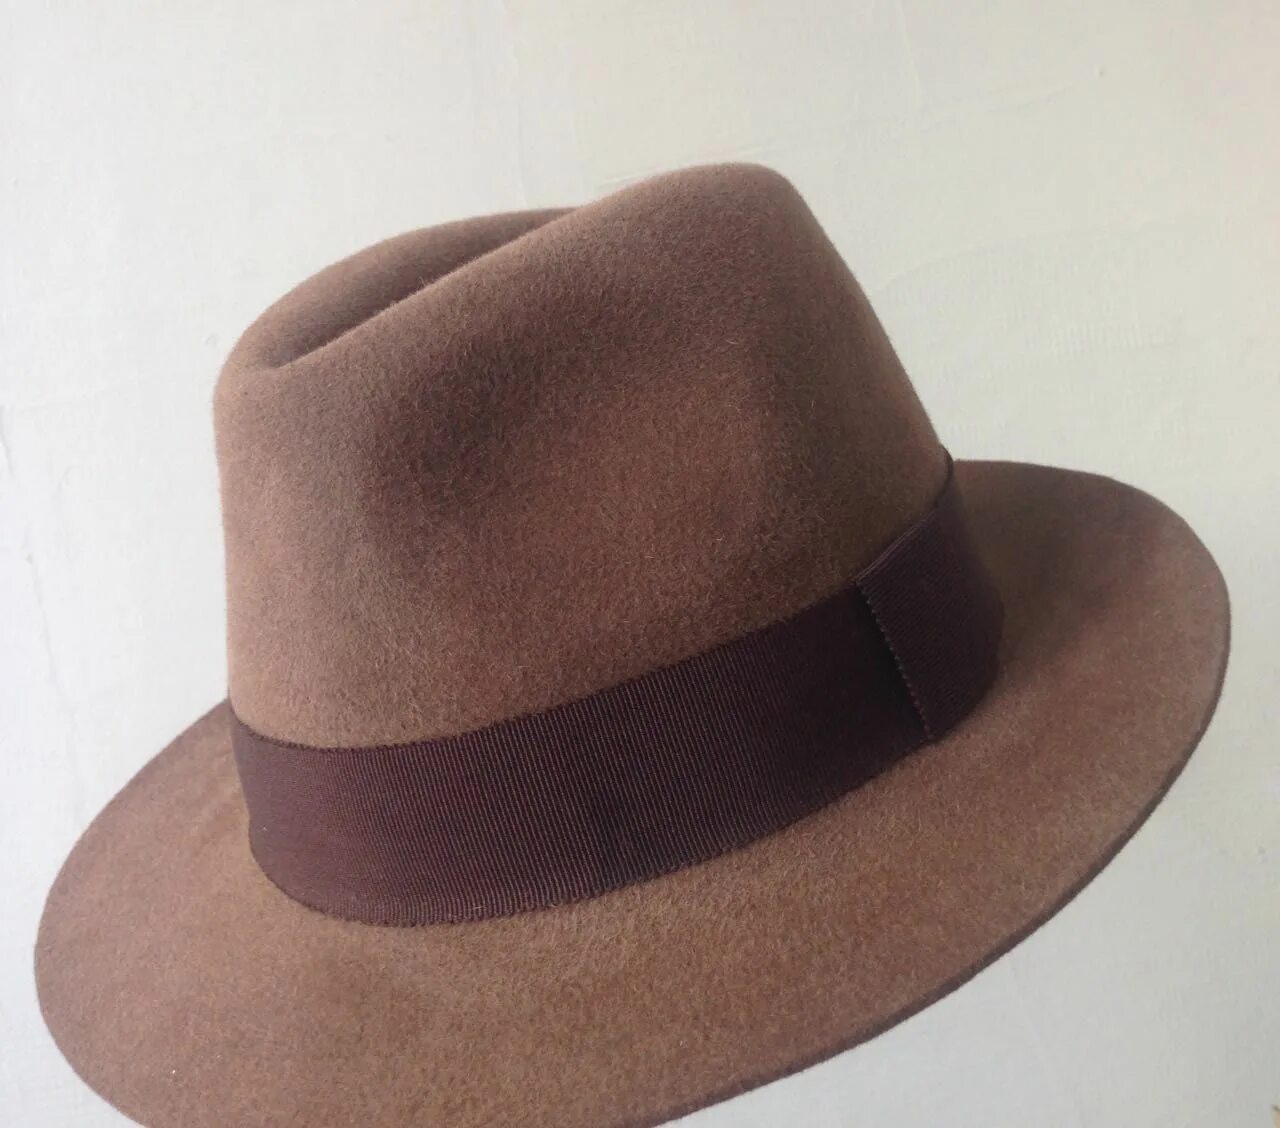 Мужская шляпа Криспи. Eureka шляпа мужская. Фетровая шляпа Федора Бове. Мужчина в шляпе.